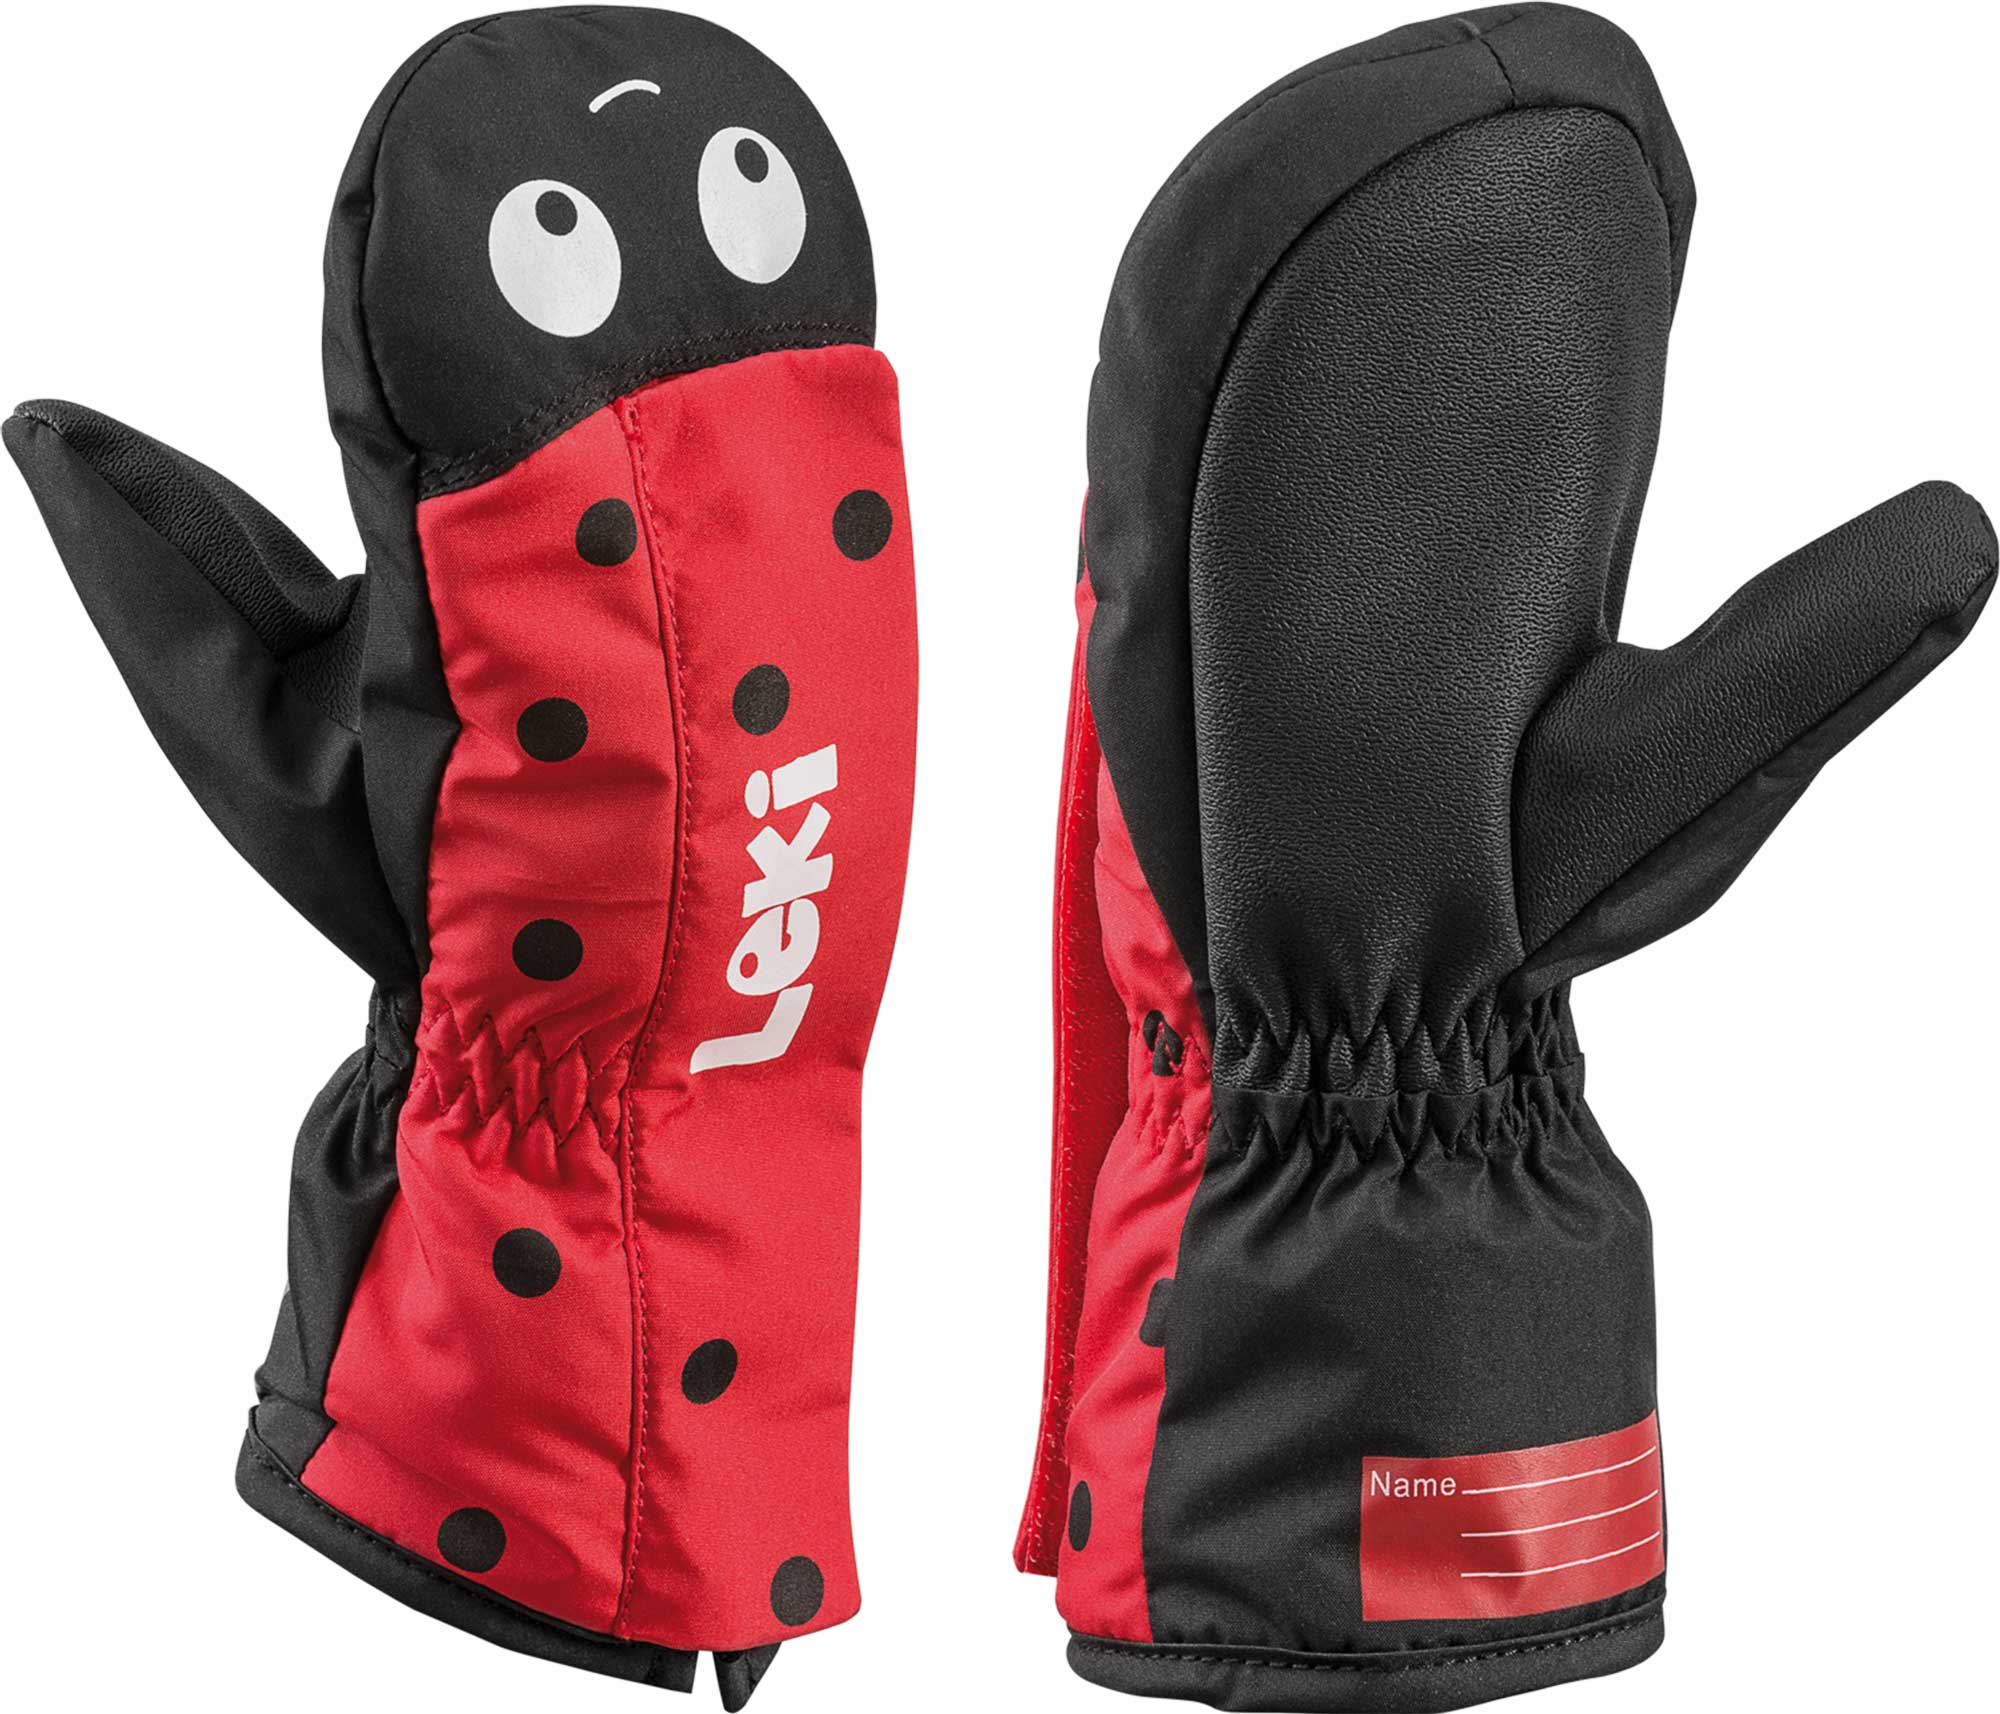 Children’s ski gloves